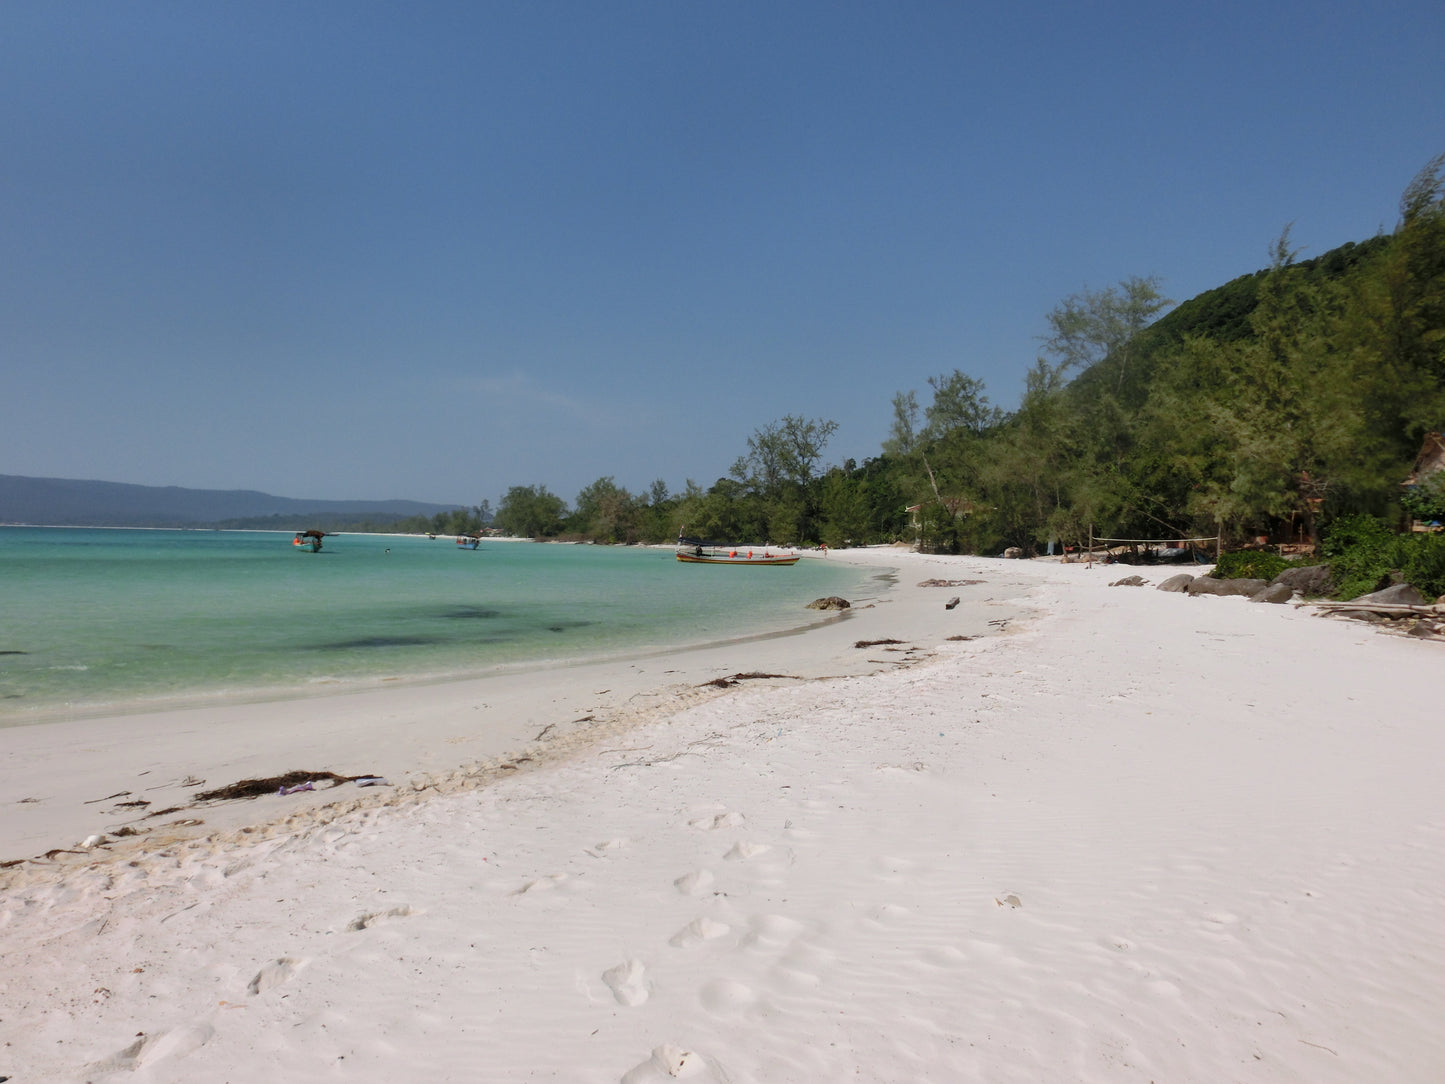 A6C: (3 Ngày) Đảo Koh Rong, Campuchia: Cuộc phiêu lưu trên thiên đường nhiệt đới